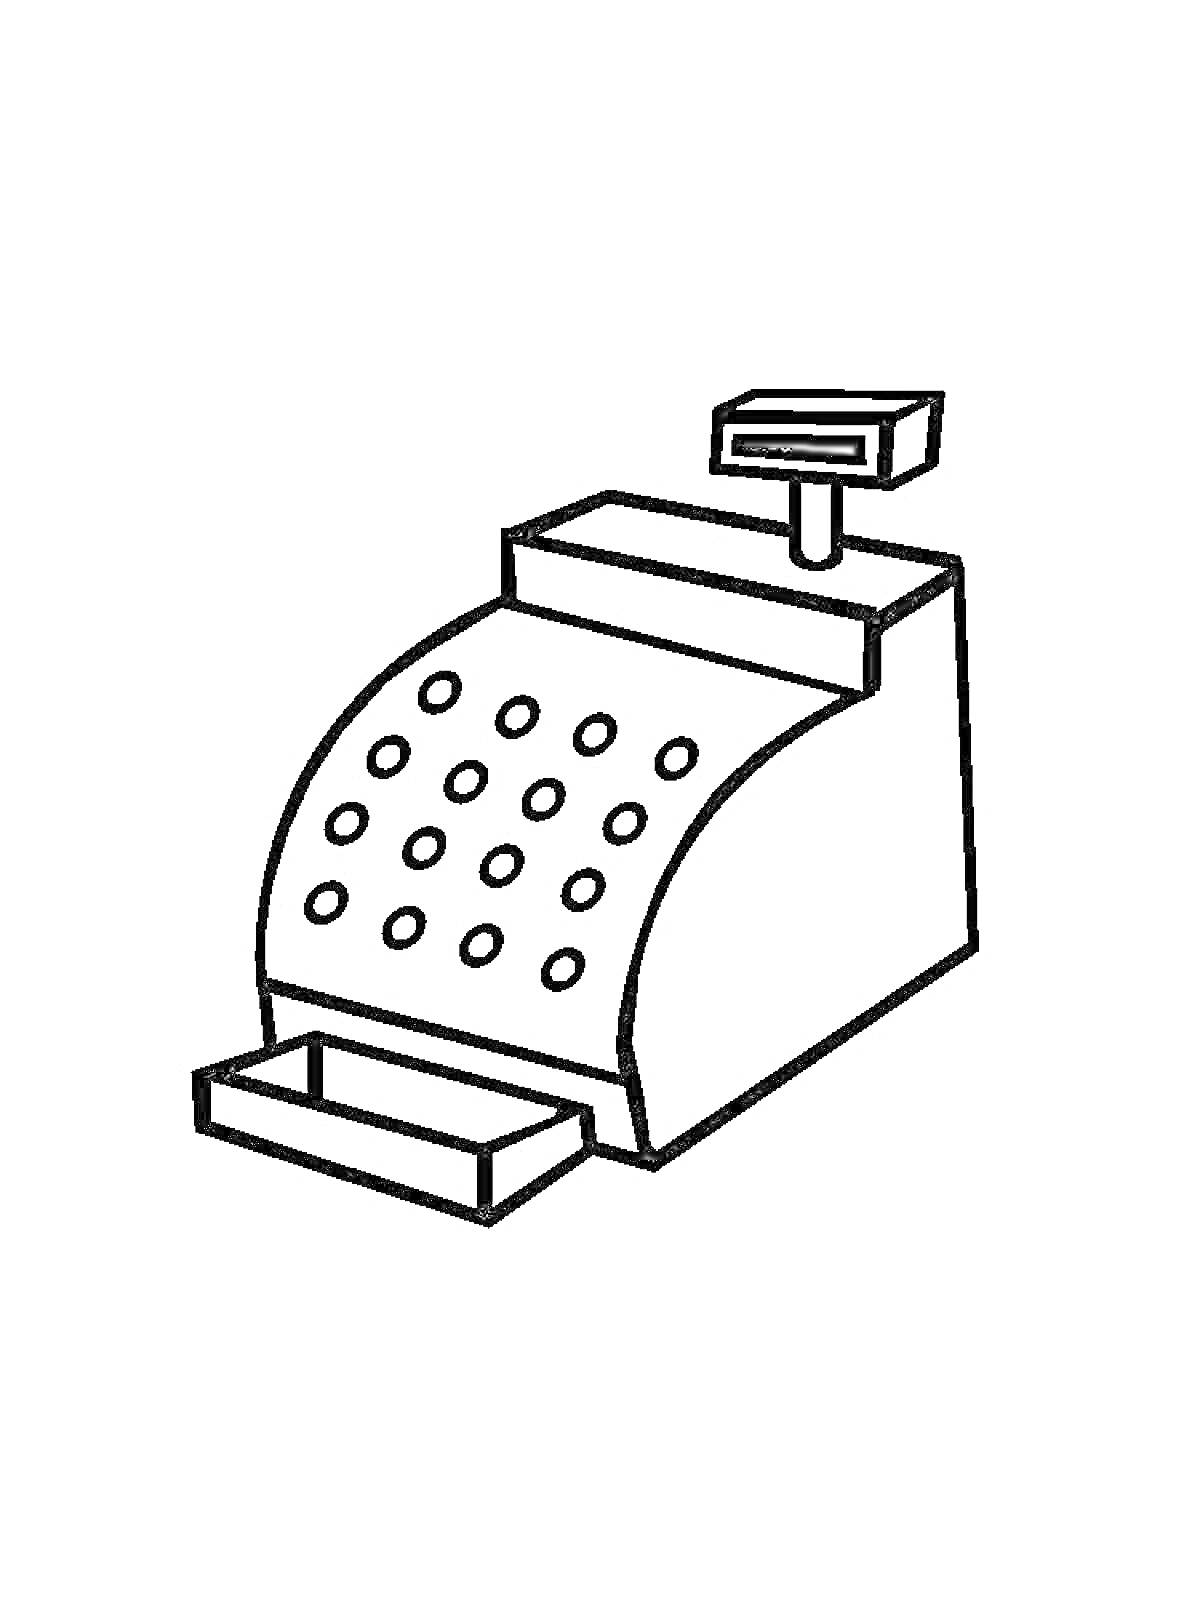 Раскраска Кассовый аппарат с кнопками и выдвижным ящиком